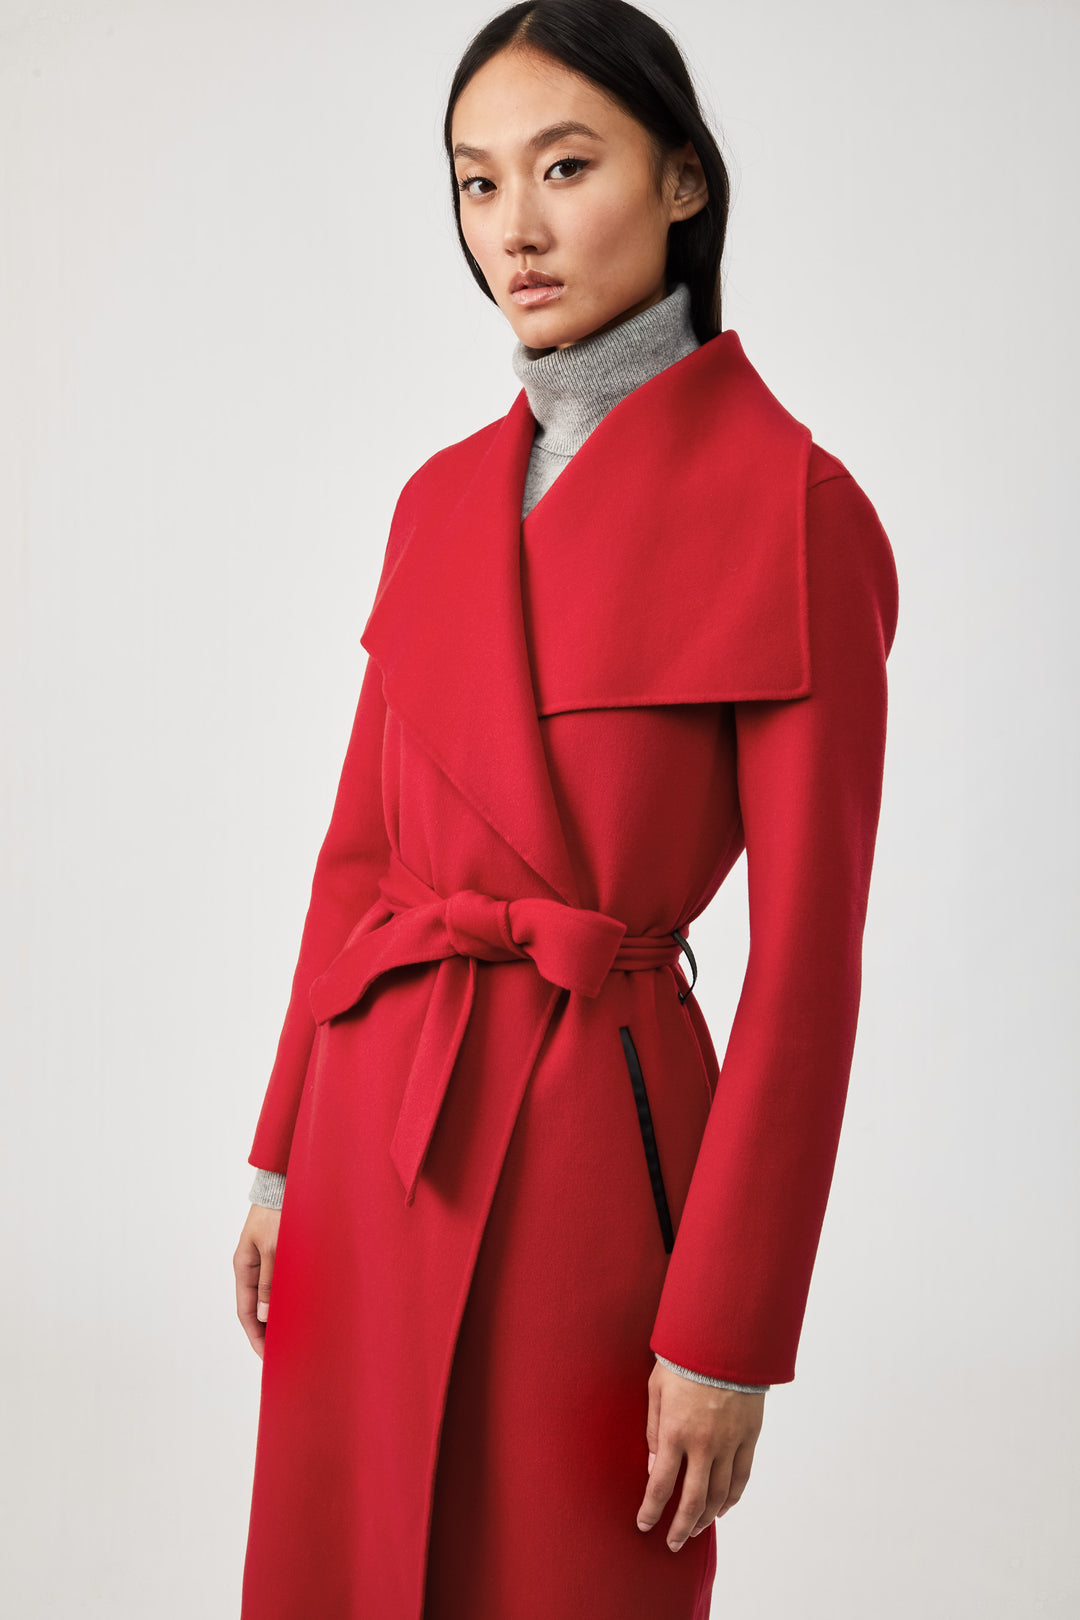 MACKAGE - Mai Wool Coat in Red – Blond Genius